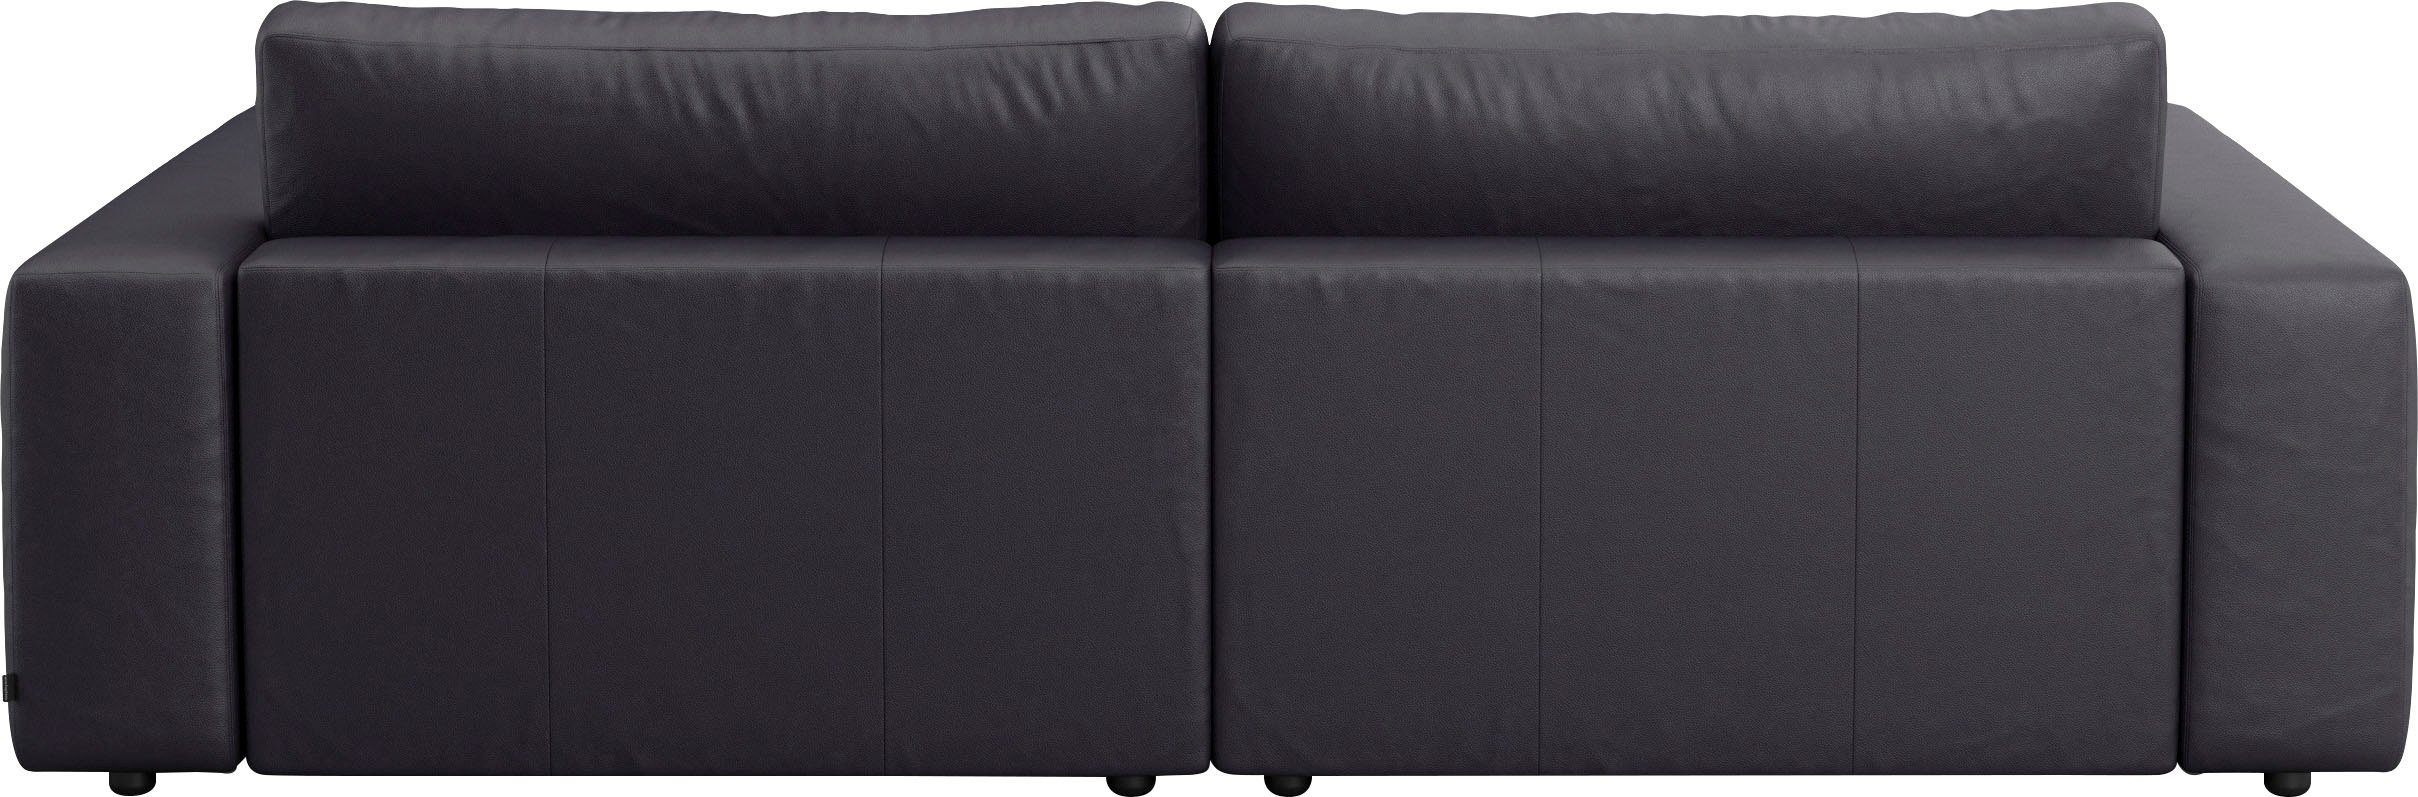 Big-Sofa unterschiedlichen by branded in 2,5-Sitzer Musterring vielen Qualitäten LUCIA, 4 Nähten, und M GALLERY